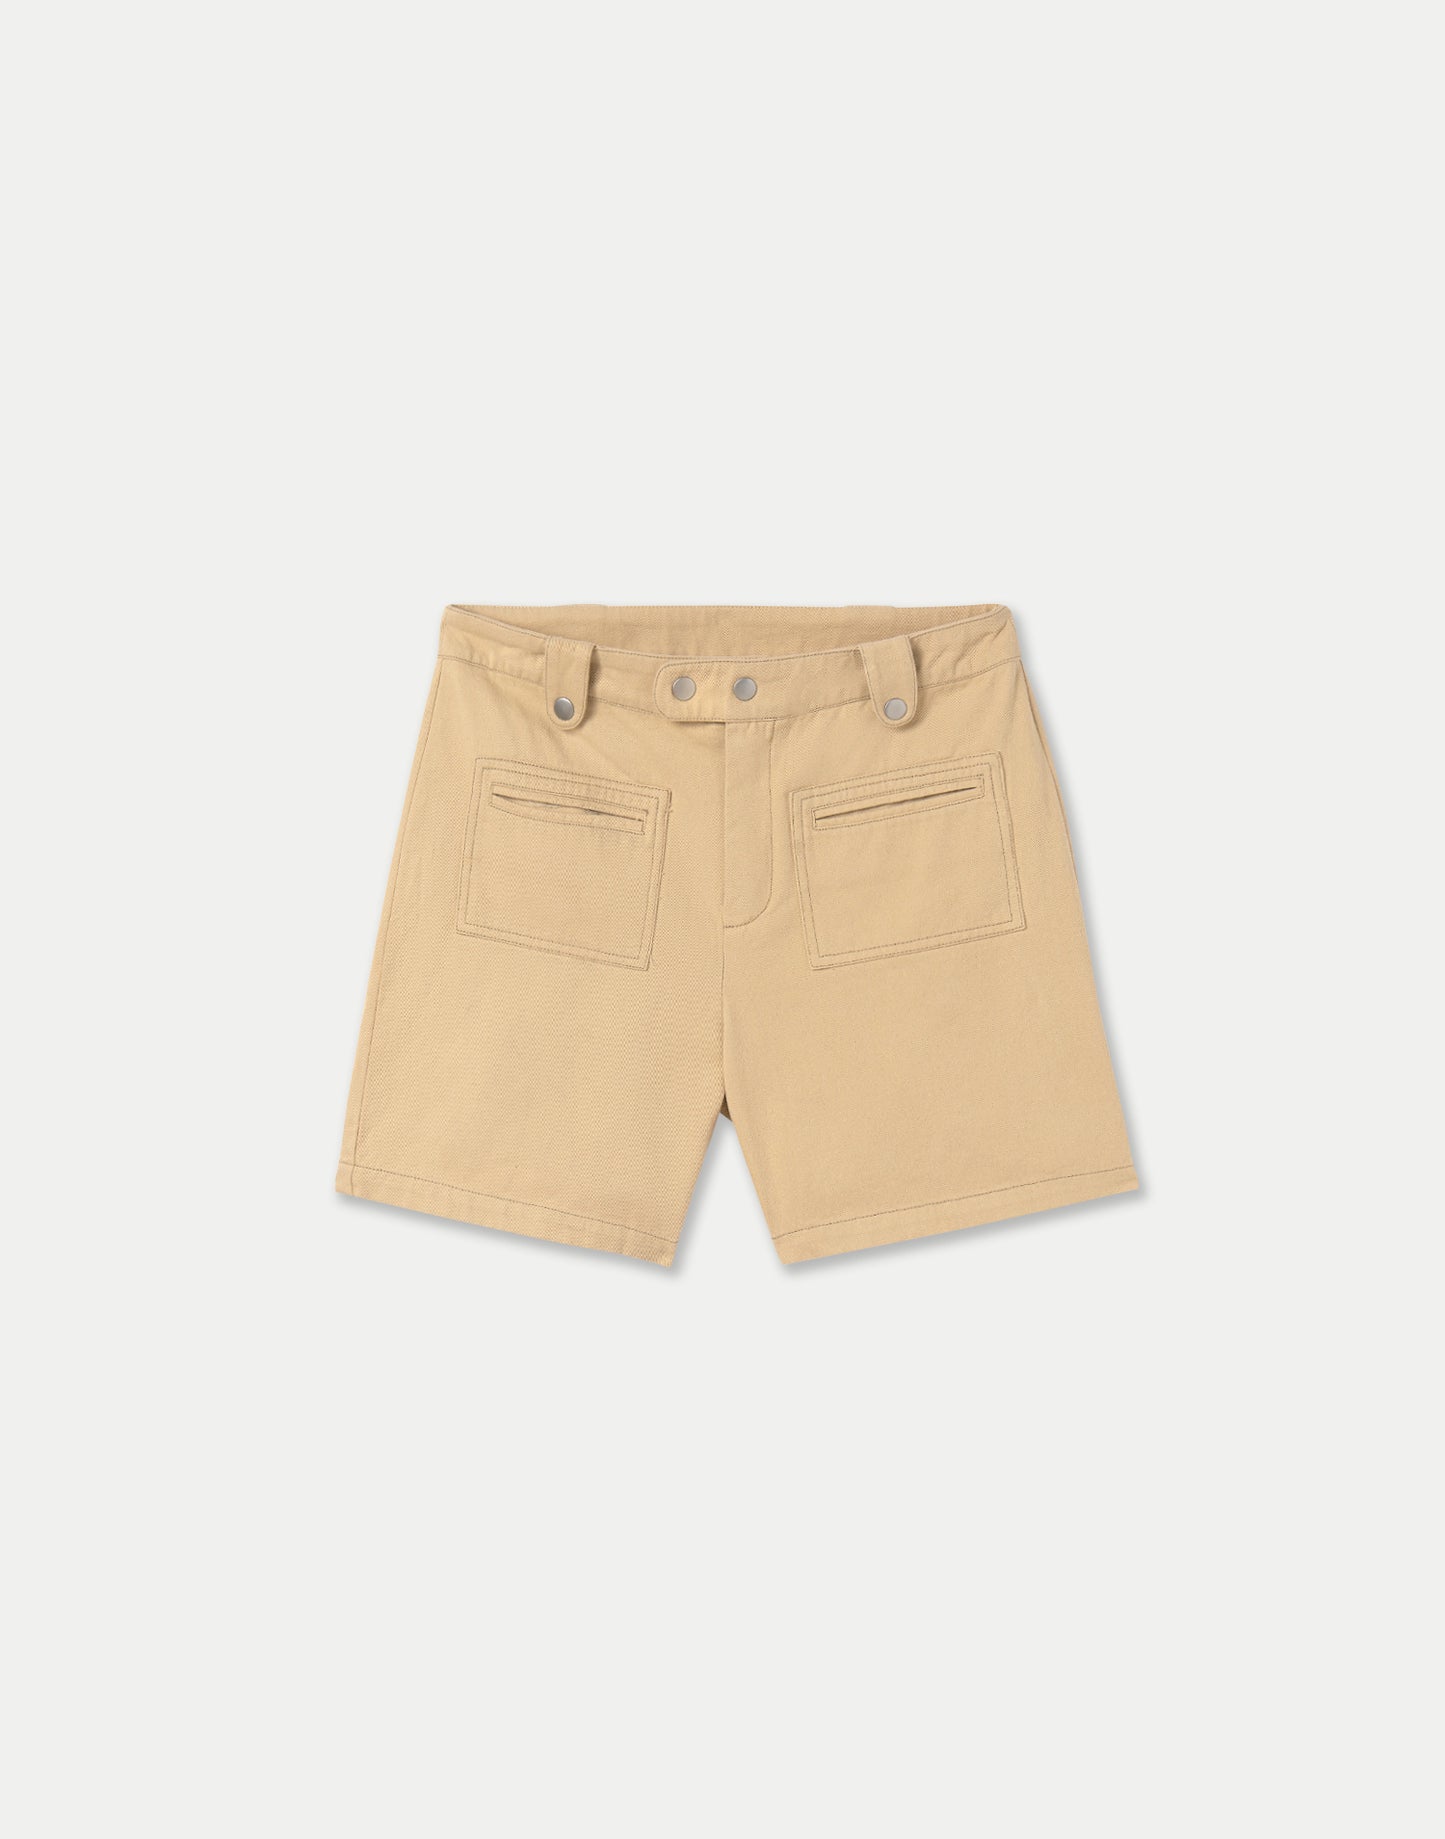 Padua Bermuda Shorts